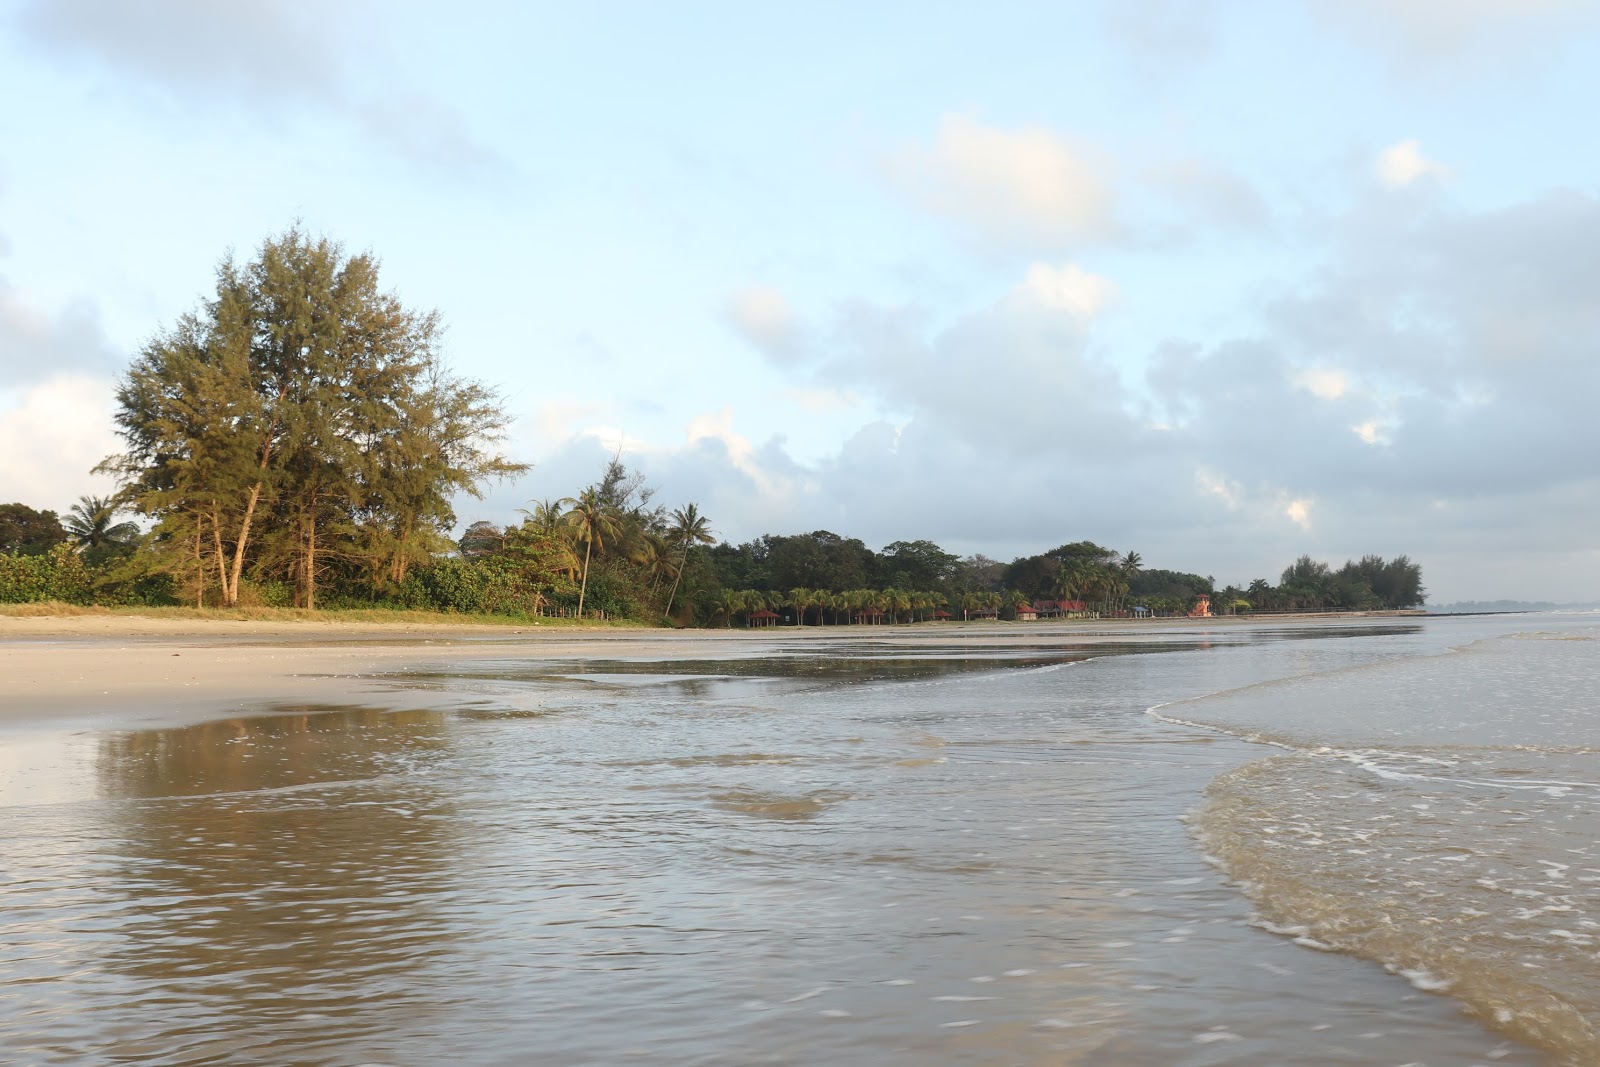 Zdjęcie Beserah Beach - popularne miejsce wśród znawców relaksu